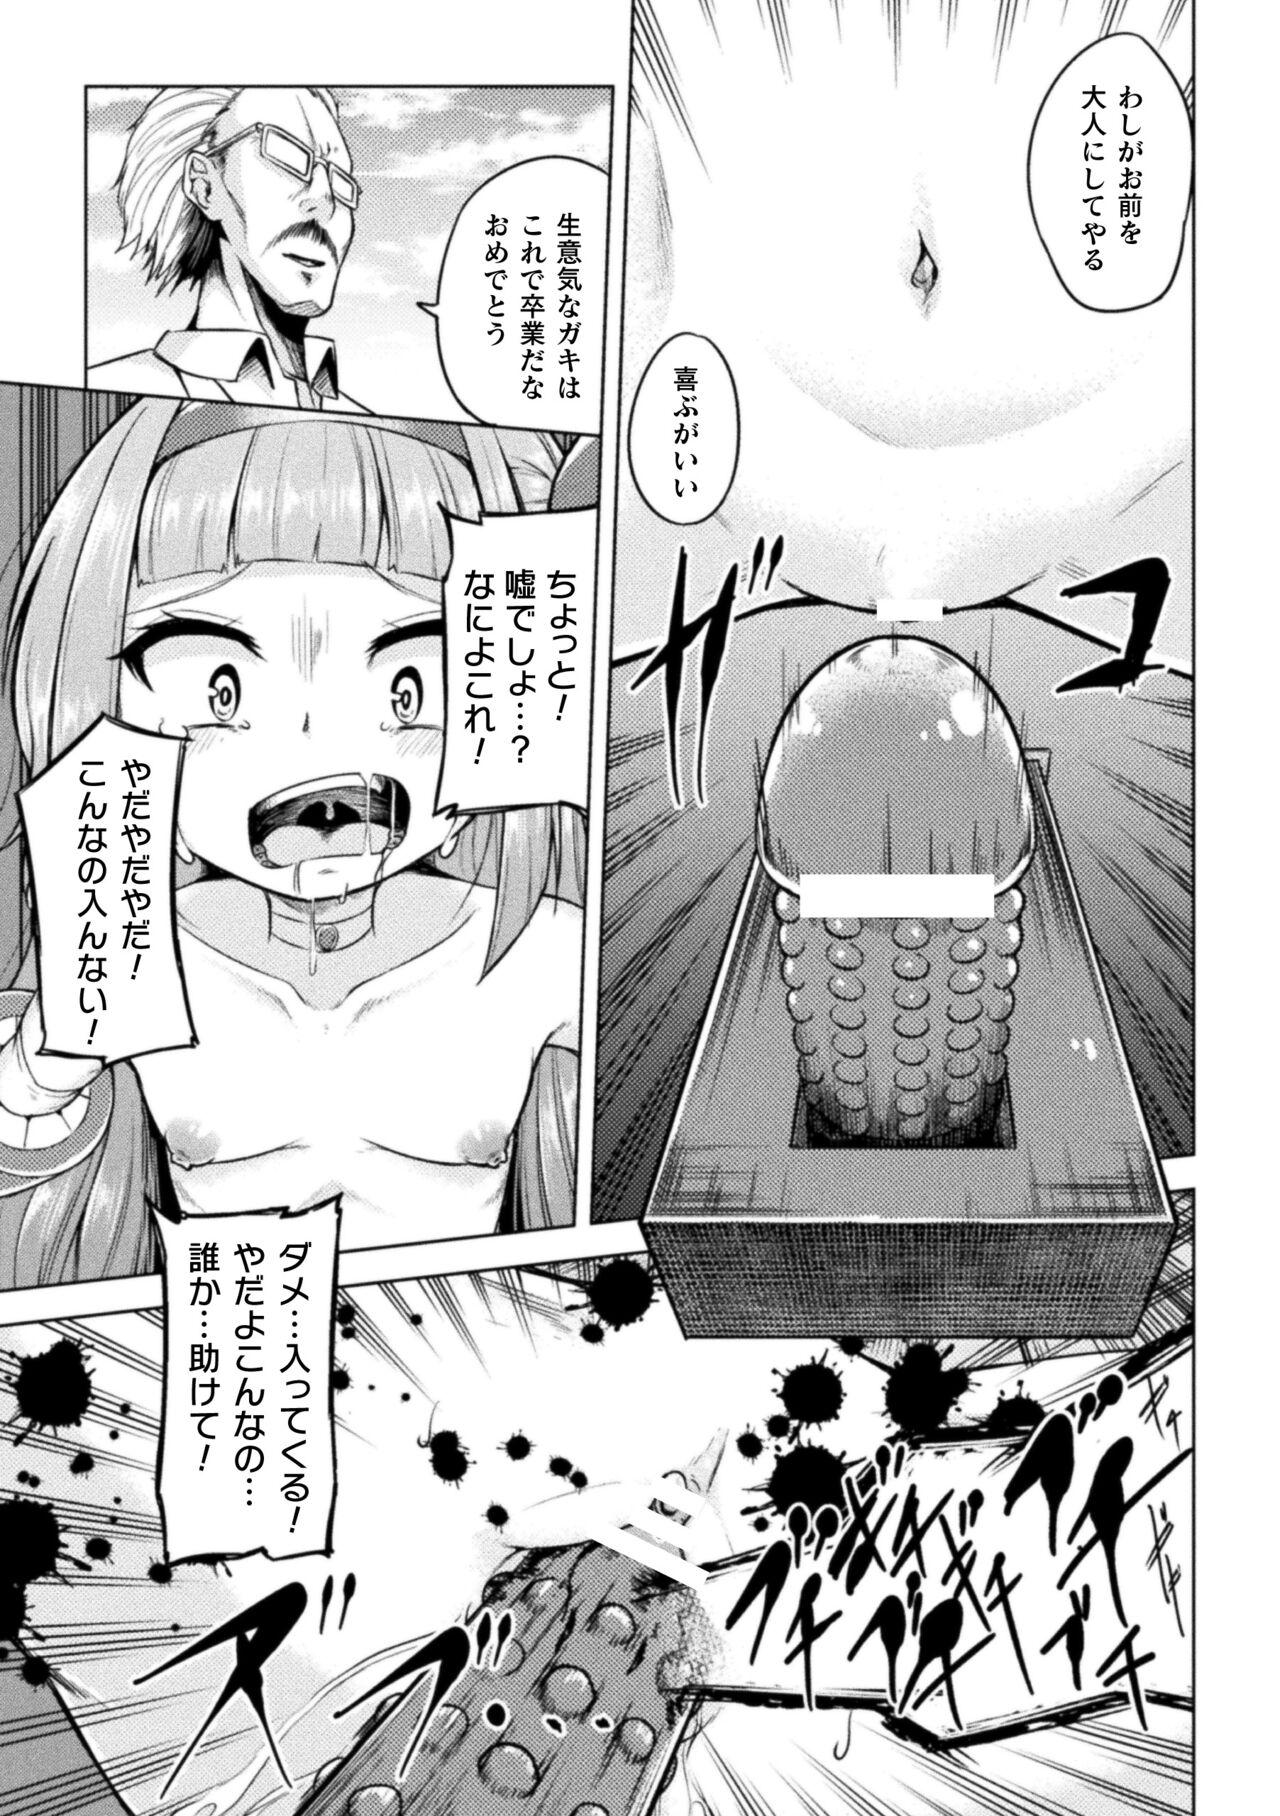 2D Comic Magazine Mesugaki Henshin Heroine Kikaikan Seisai Hijou no Wakarase Machine de Renzoku Loli Acme Vol. 3 34